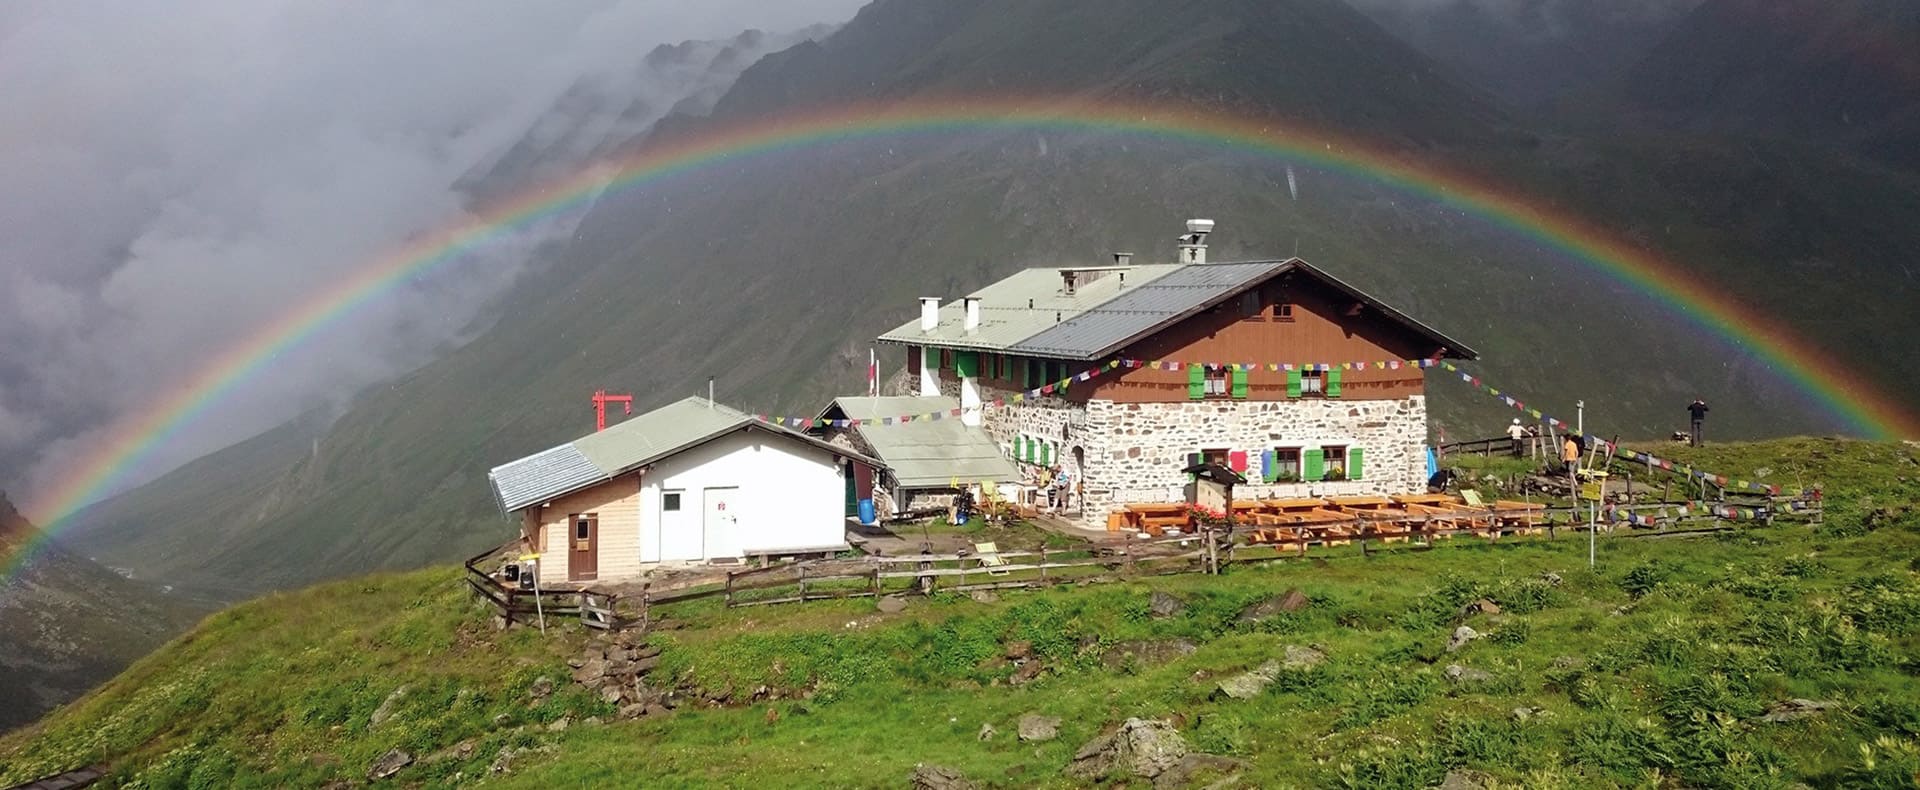 Pforzheimerhütte mit Regenbogen in St Sigmund in Tirol